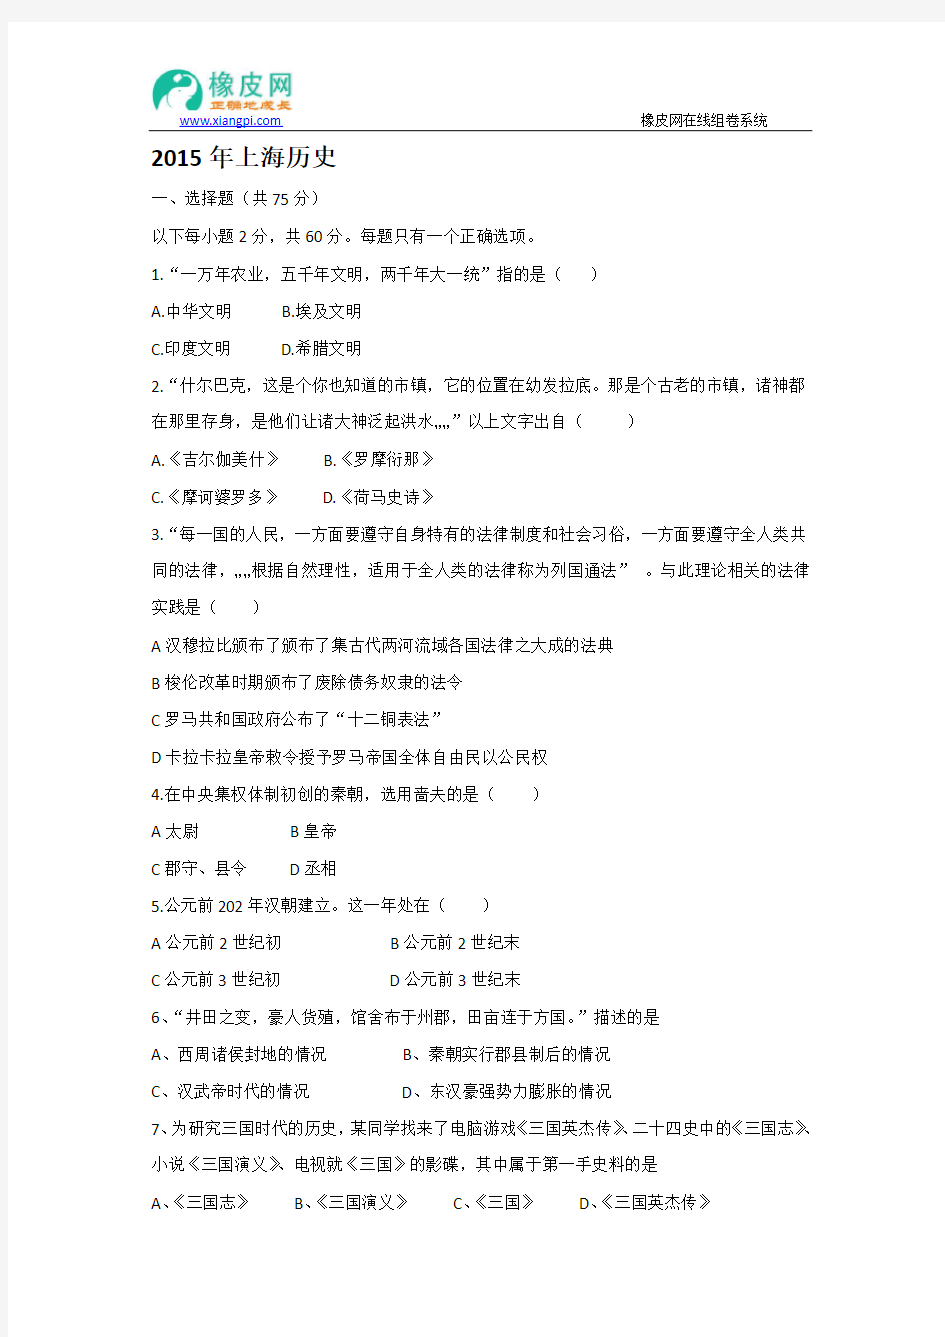 2015年高考试题——历史(上海卷) Word版缺答案